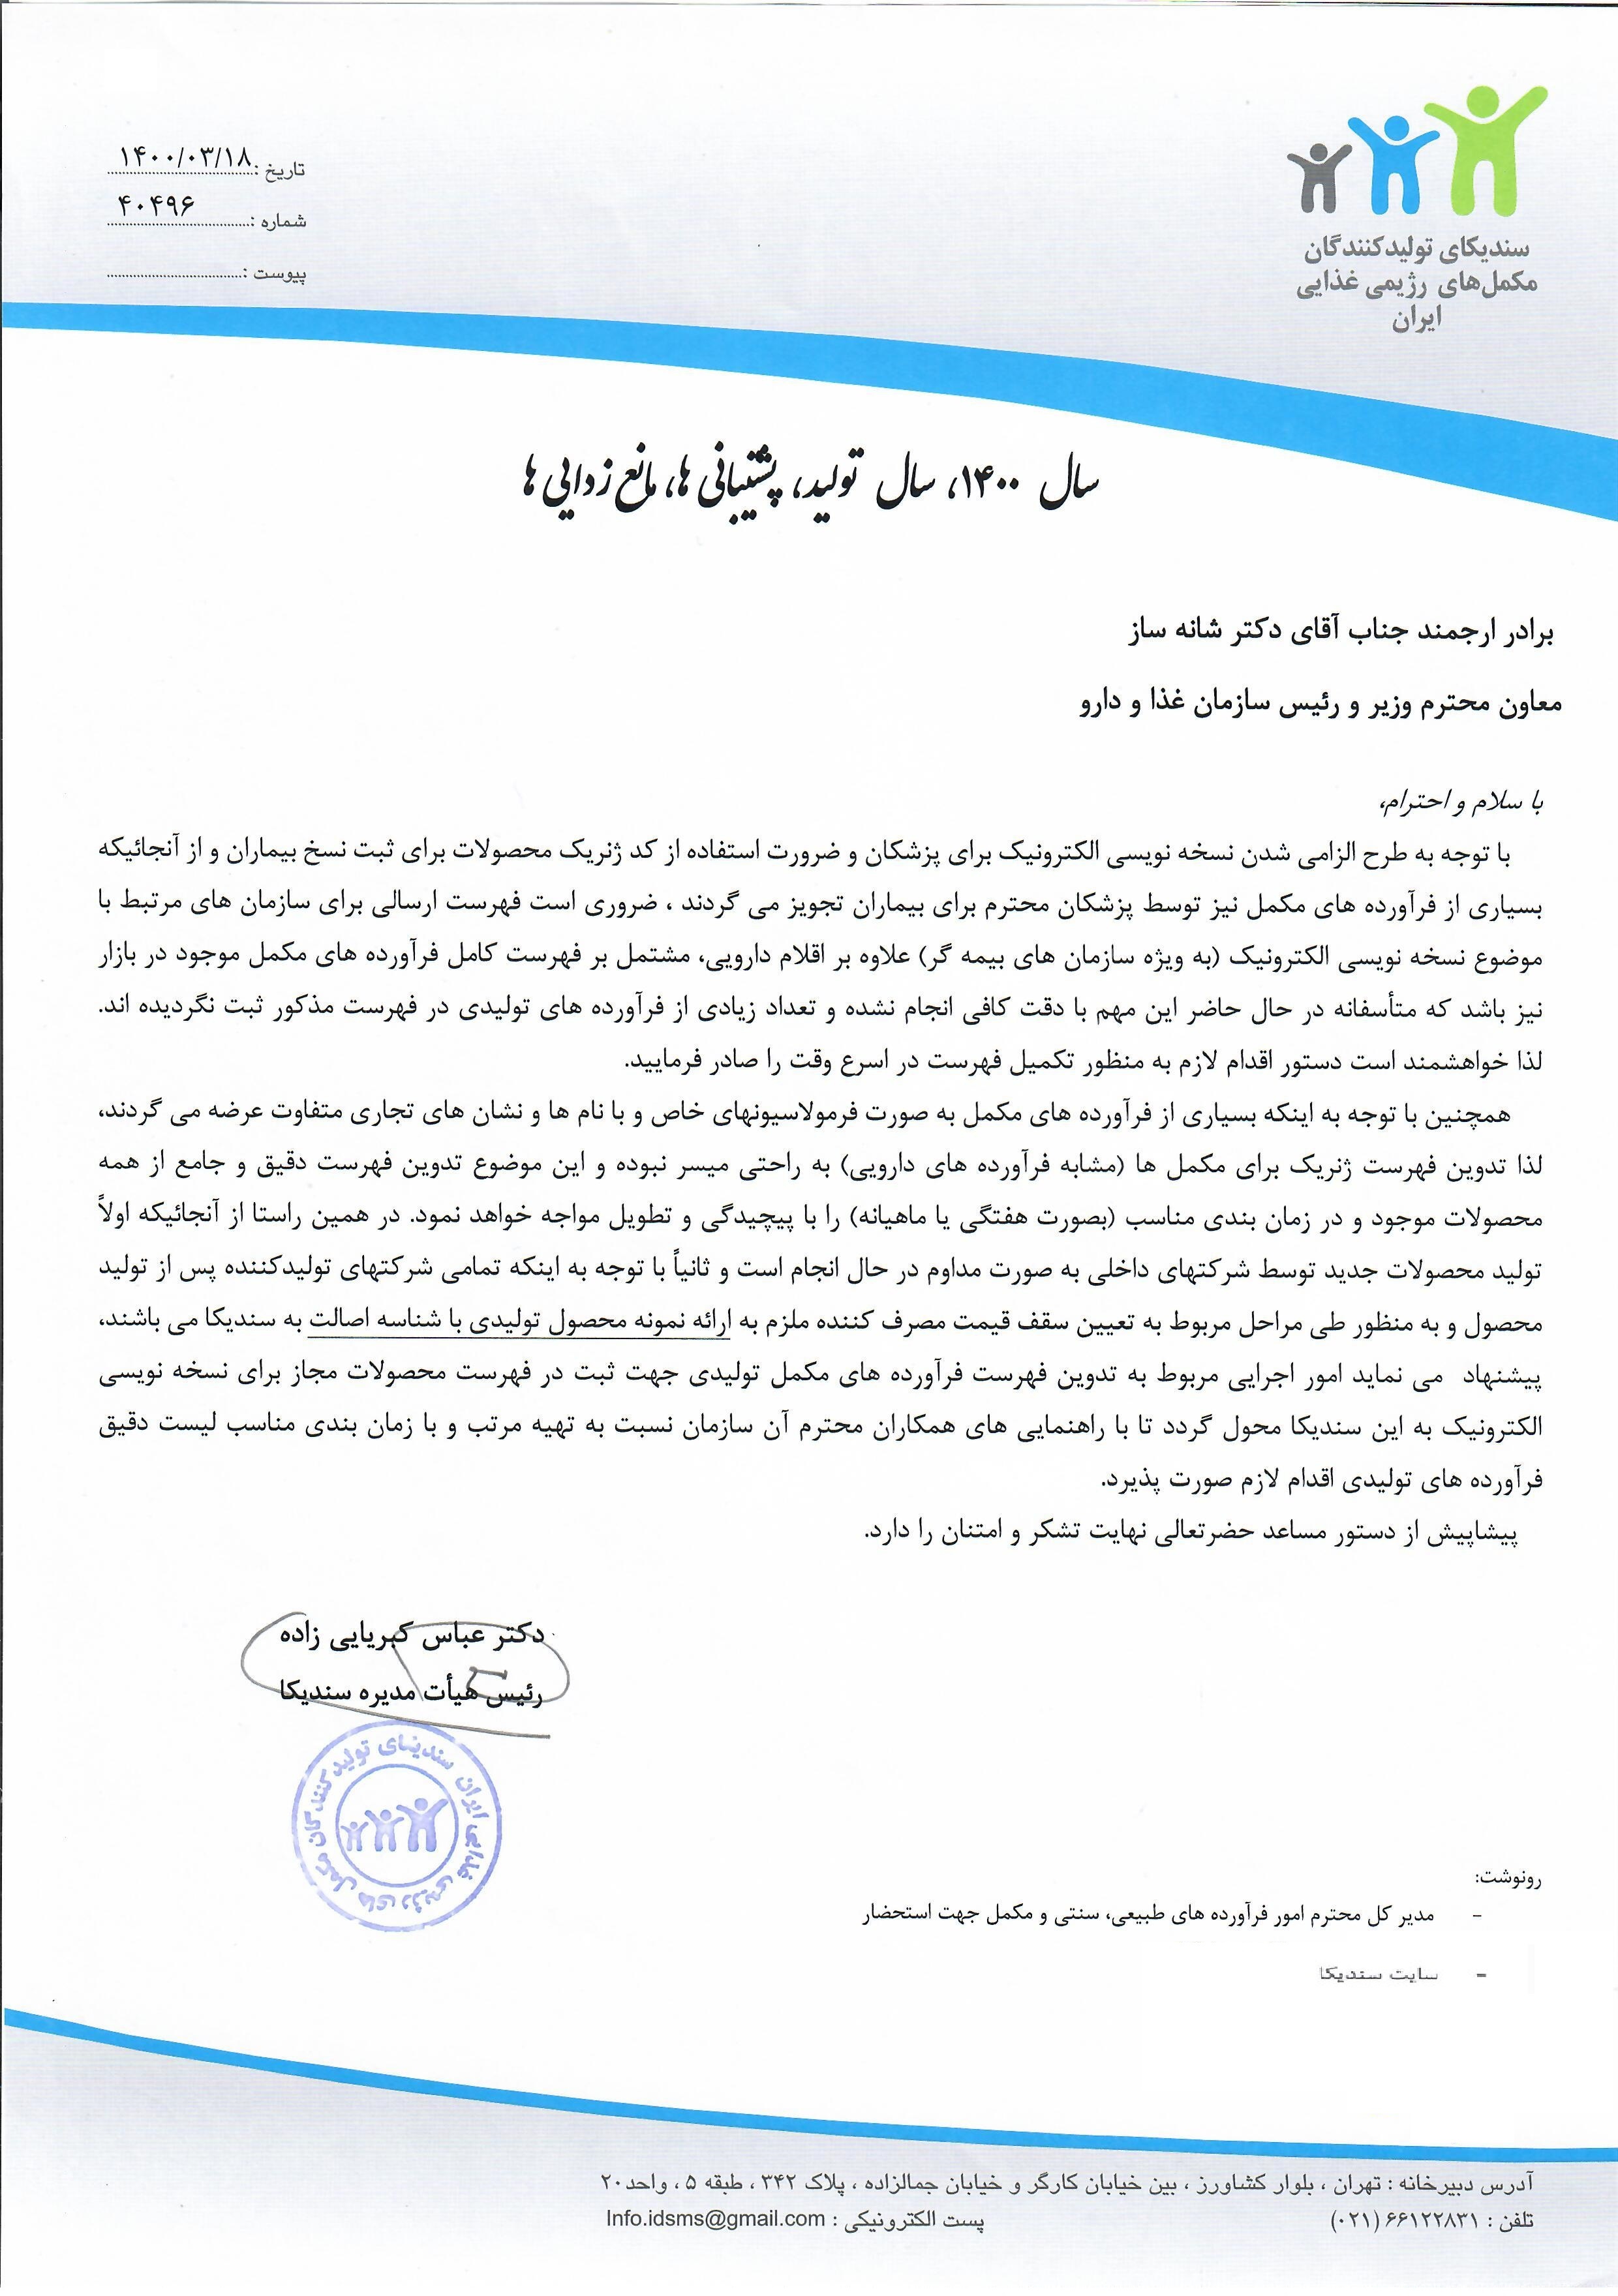 نامه به سازمان غذا و دارو در خصوص الزامی شدن طرح نسخه نویسی الکترونیک برای پزشکان